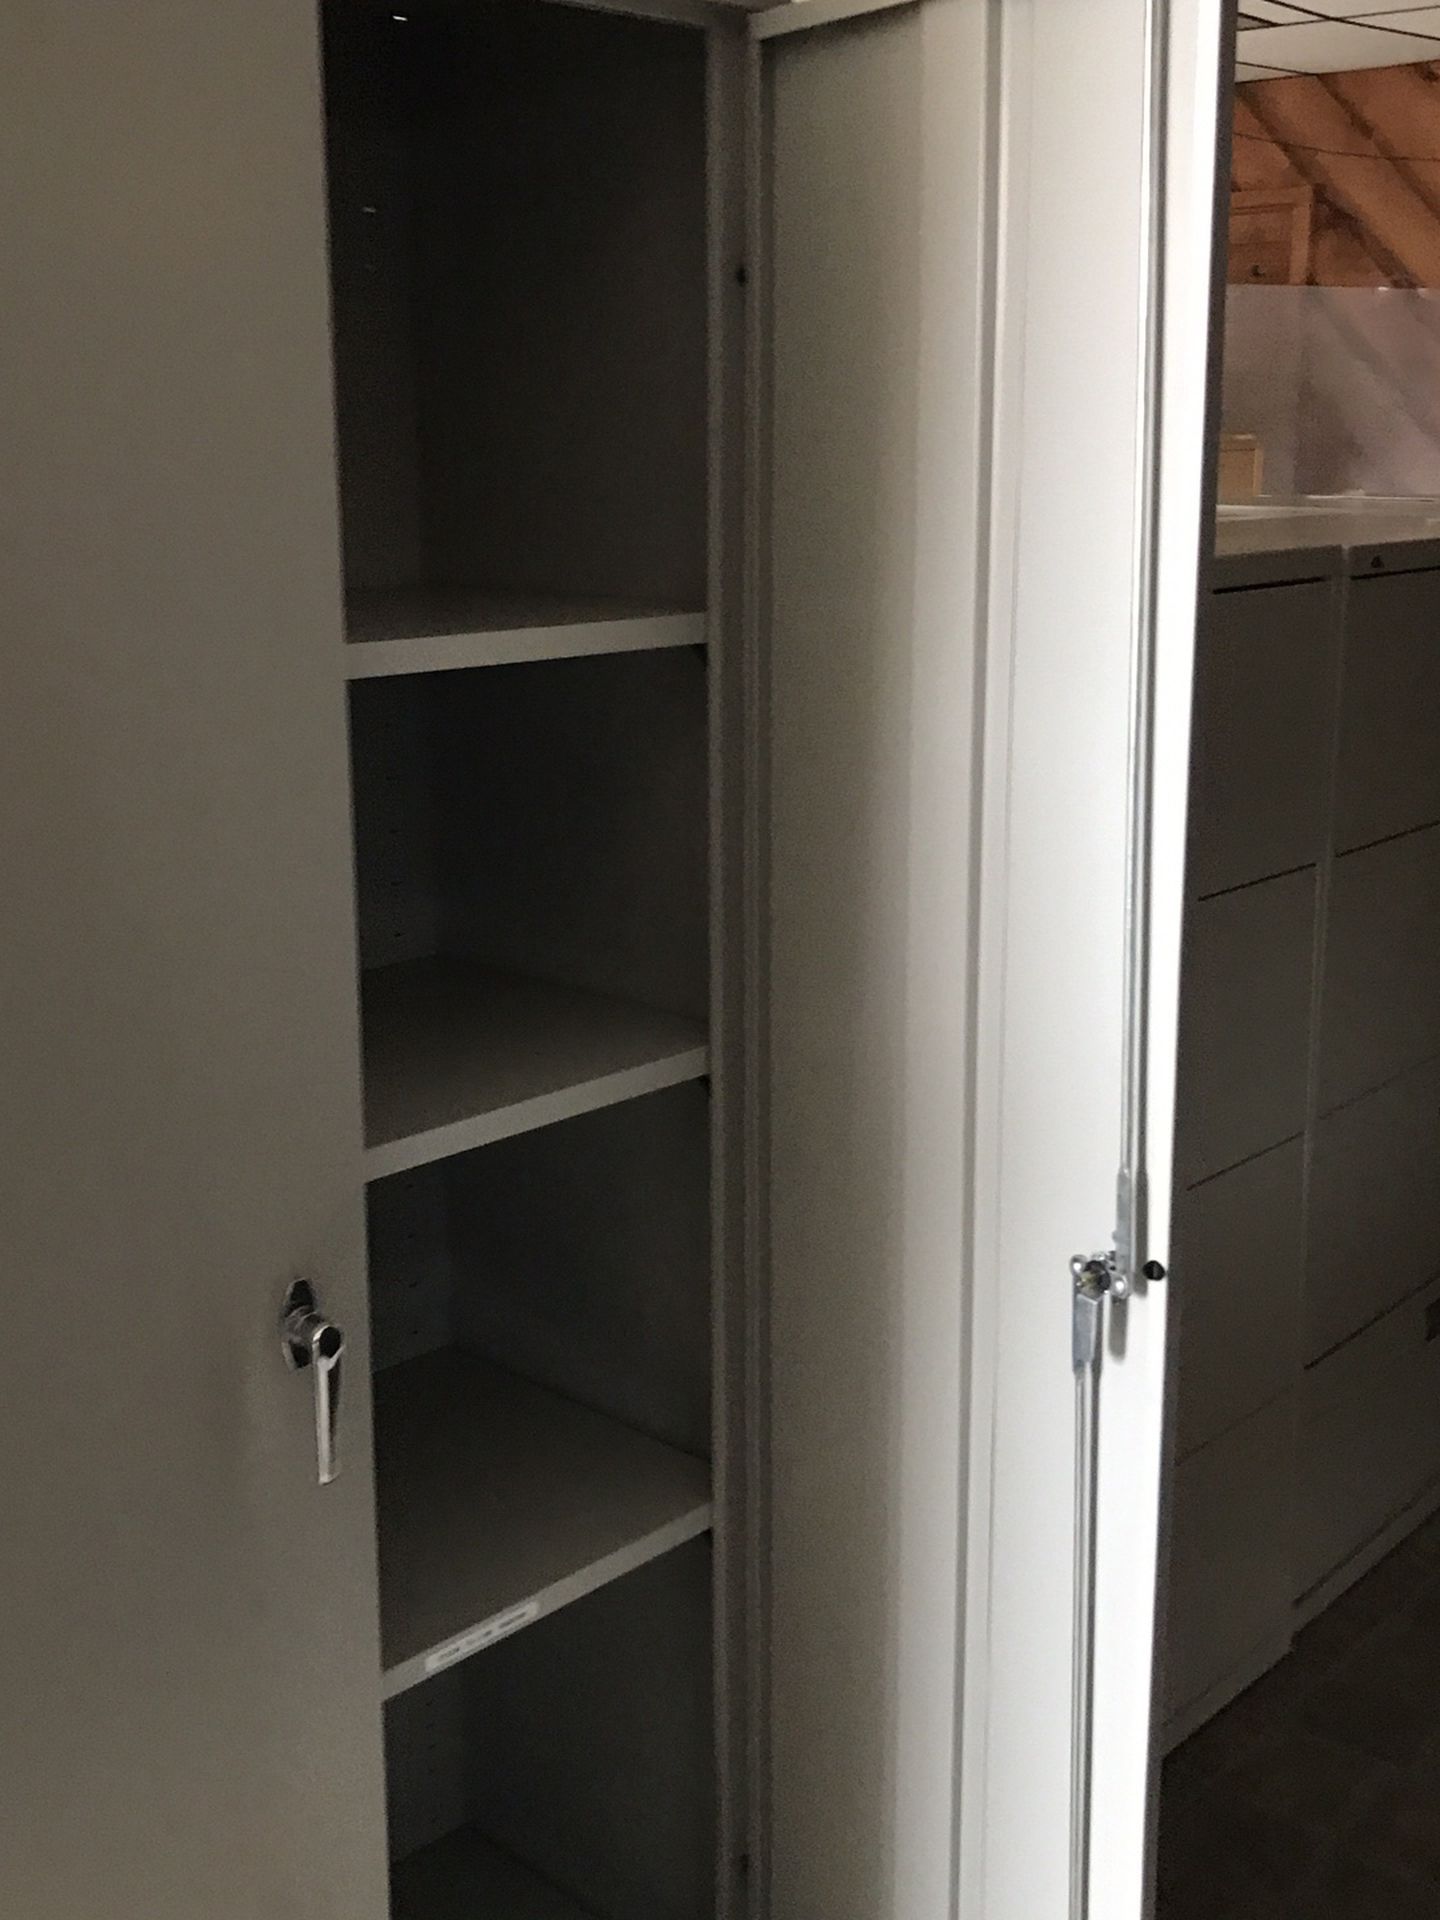 Metal storage CabinetDoue door . 6 Ft Height. 36” Wide. 18”D